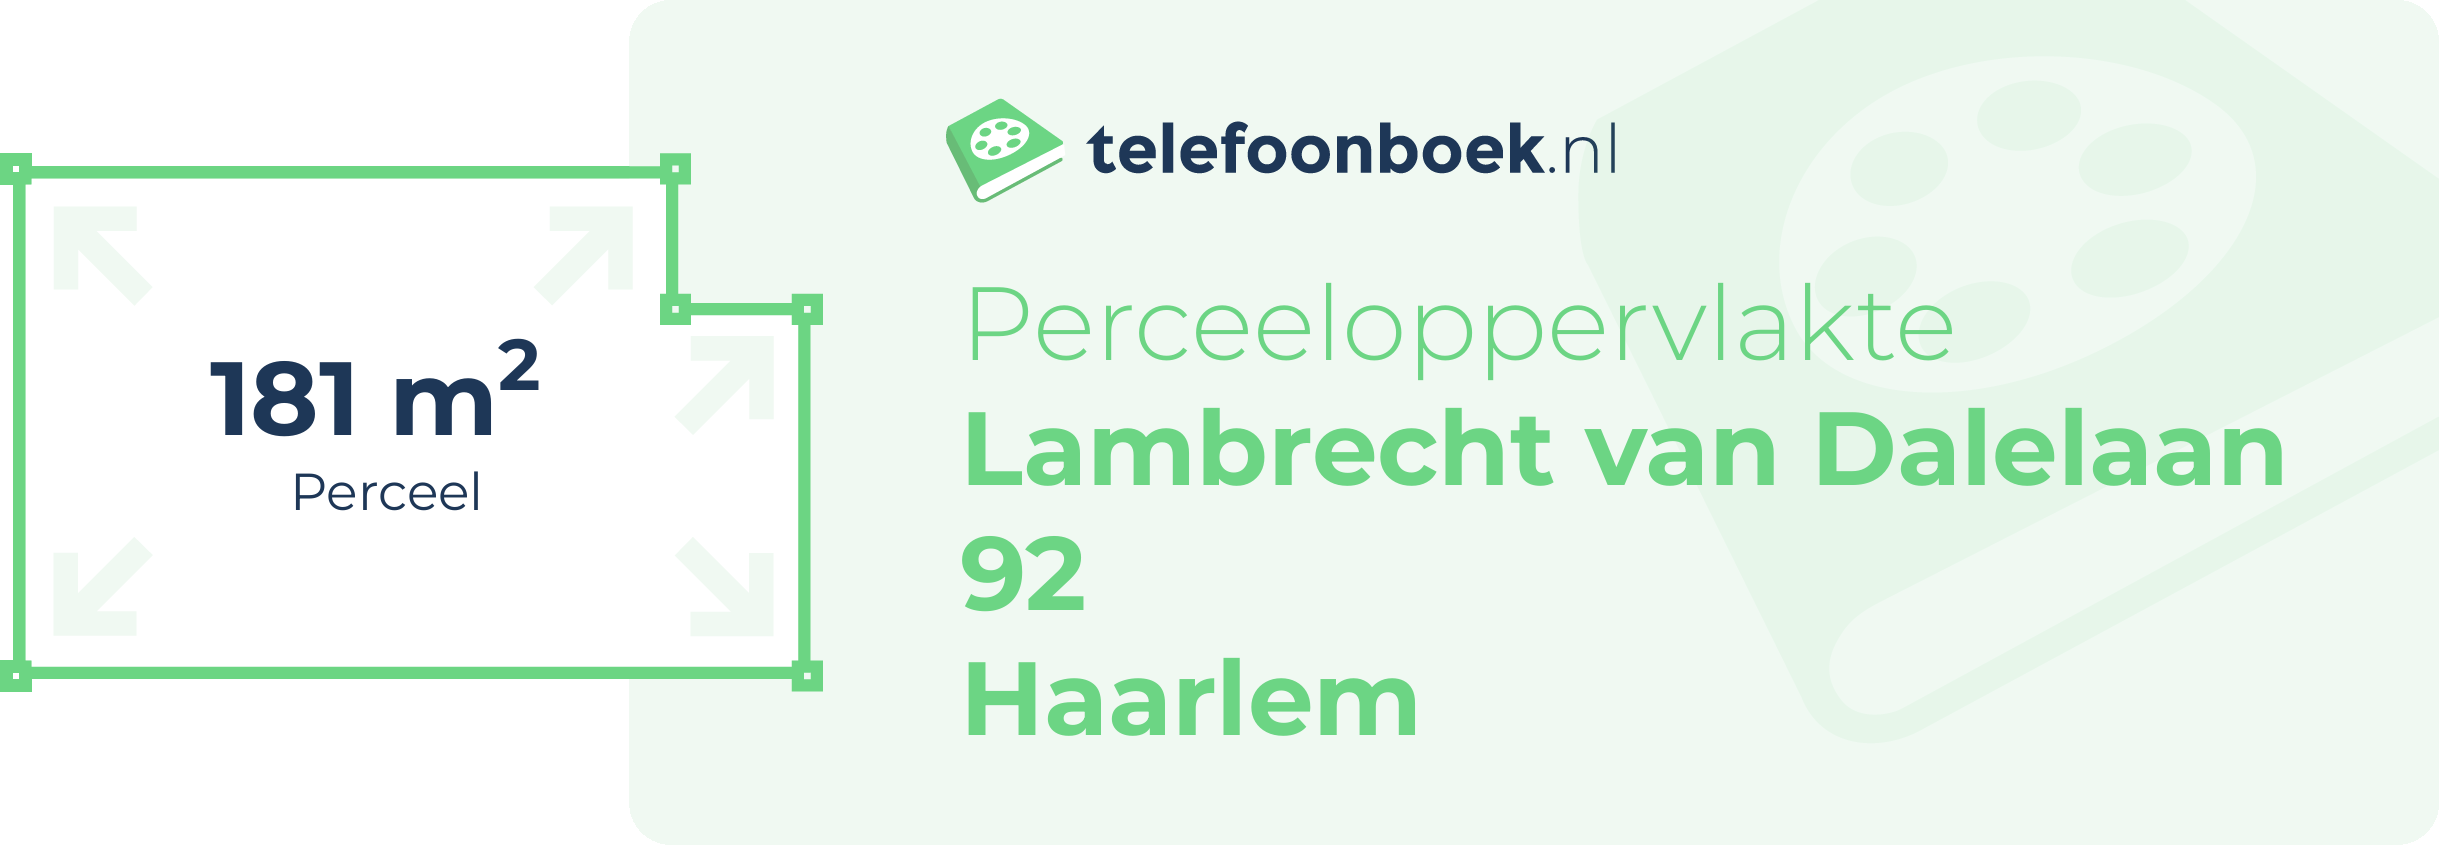 Perceeloppervlakte Lambrecht Van Dalelaan 92 Haarlem